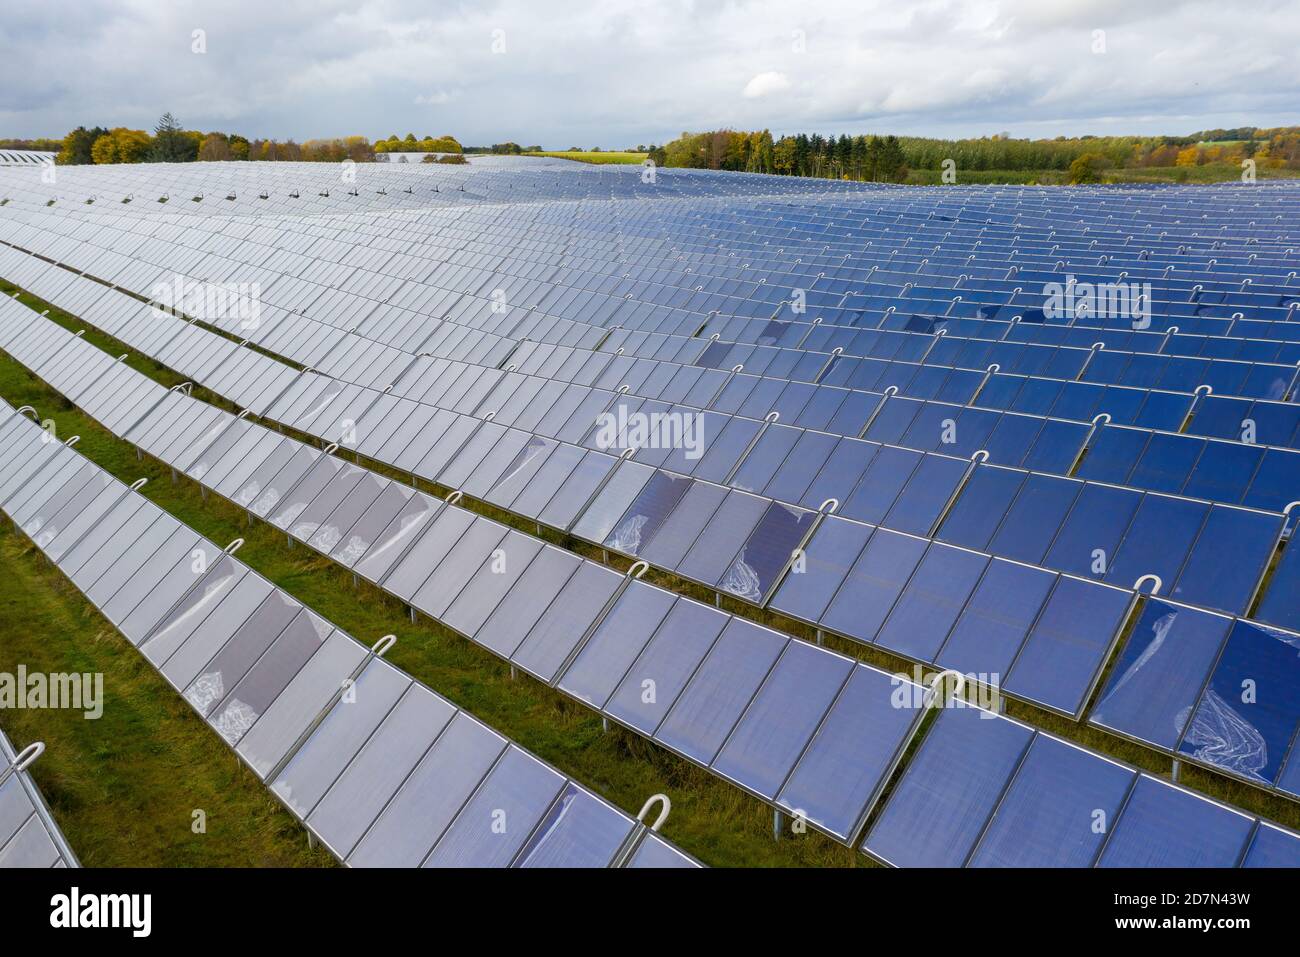 Parc d'énergie solaire à Silkeborg, Danemark. Il couvre une superficie de 156.000 m2 ou 22 terrains de football et dispose de 12,000 panneaux solaires. Banque D'Images